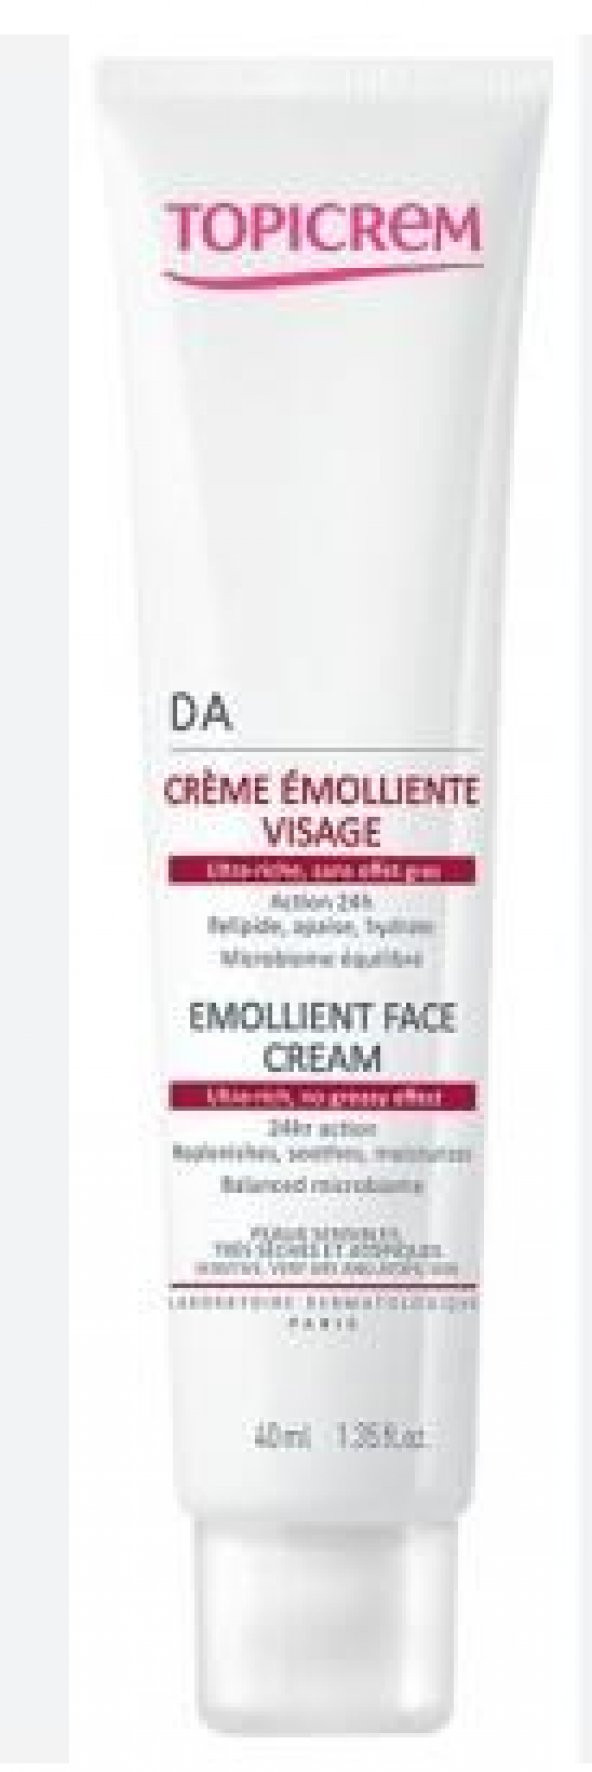 TopicremDA Emollient Face Cream 40ml